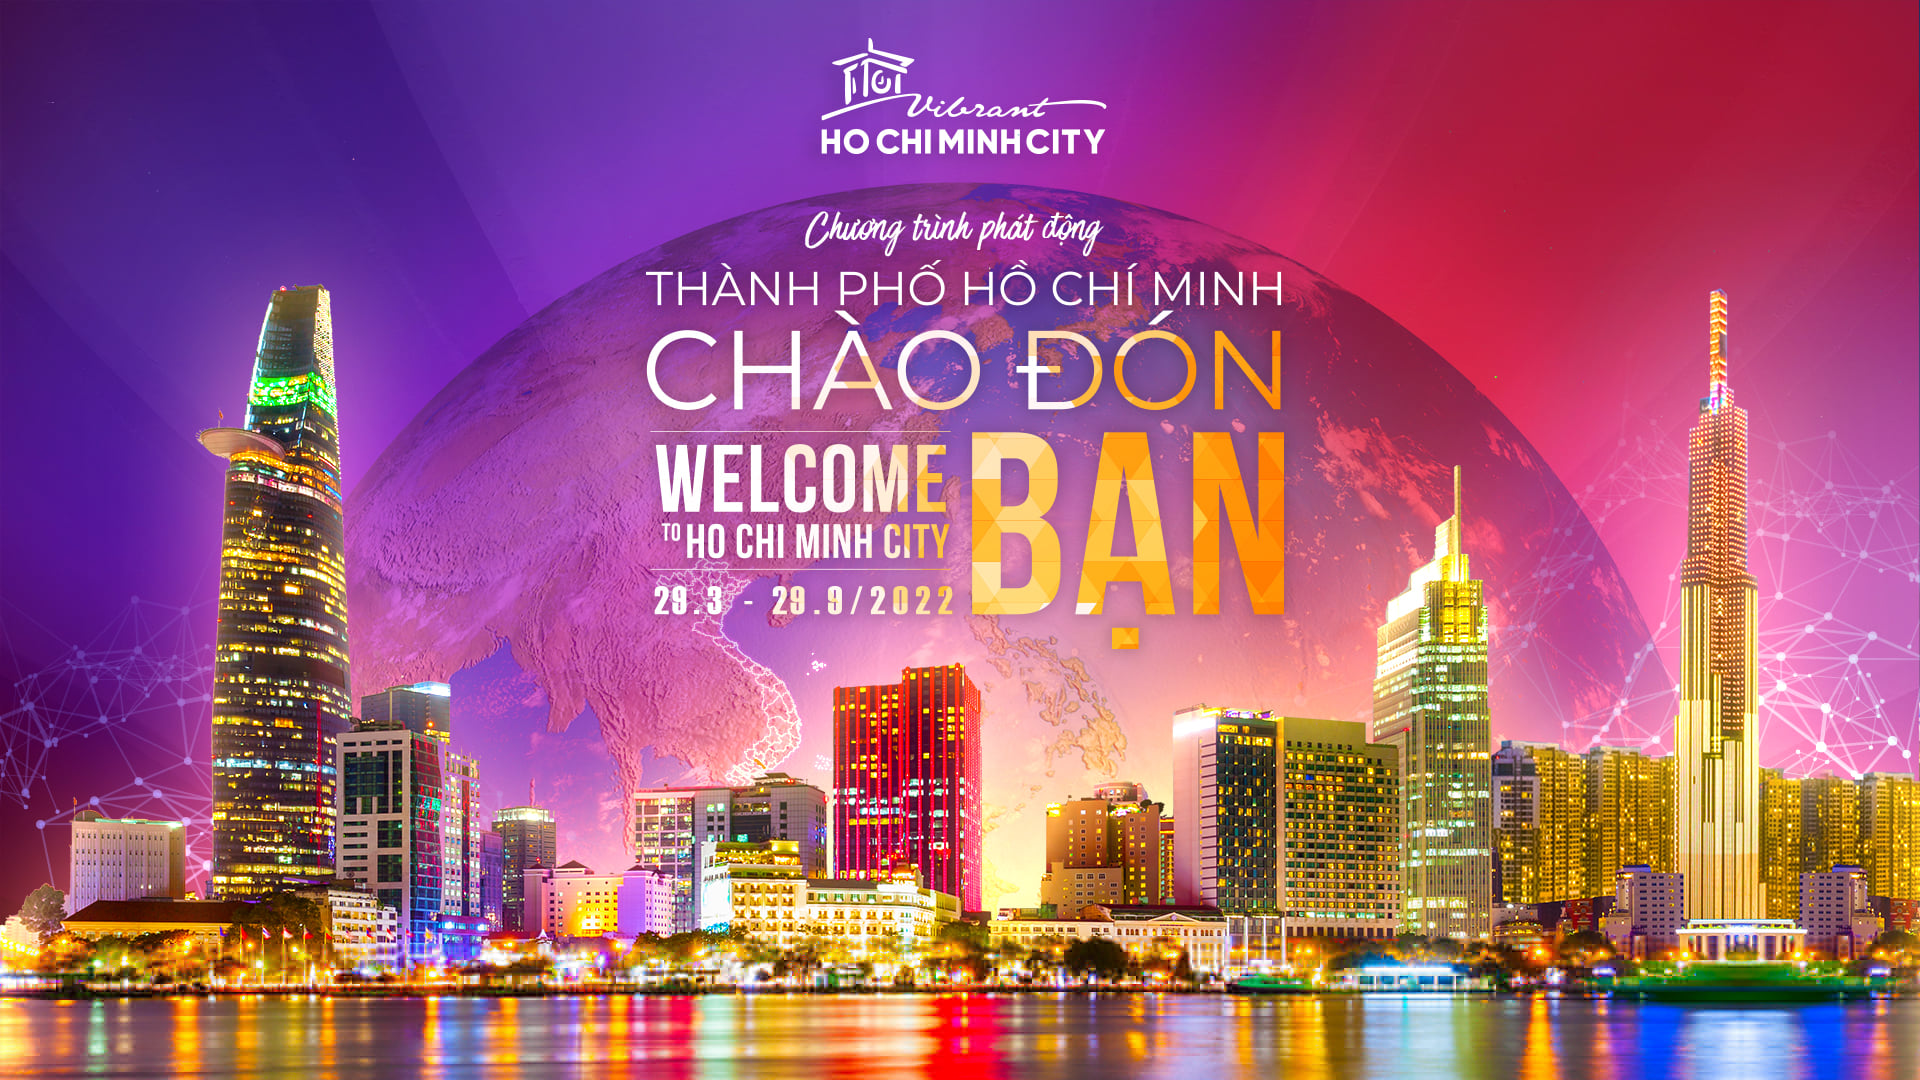 “Thành phố Hồ Chí Minh chào đón bạn – Welcome to Ho Chi Minh City”